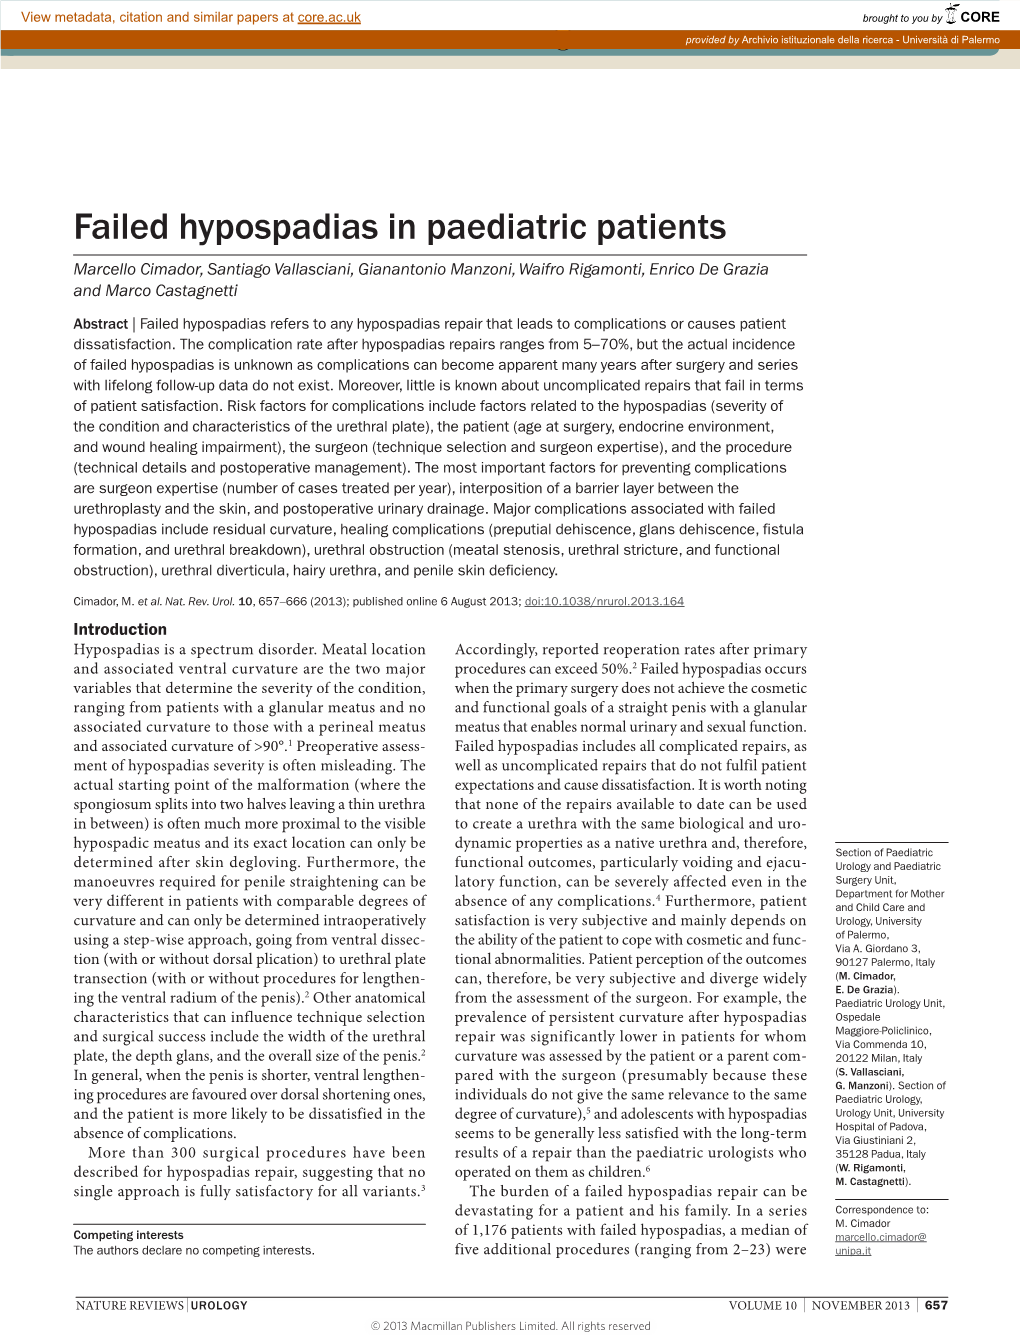 Failed Hypospadias in Paediatric Patients Marcello Cimador, Santiago Vallasciani, Gianantonio Manzoni, Waifro Rigamonti, Enrico De Grazia and Marco Castagnetti